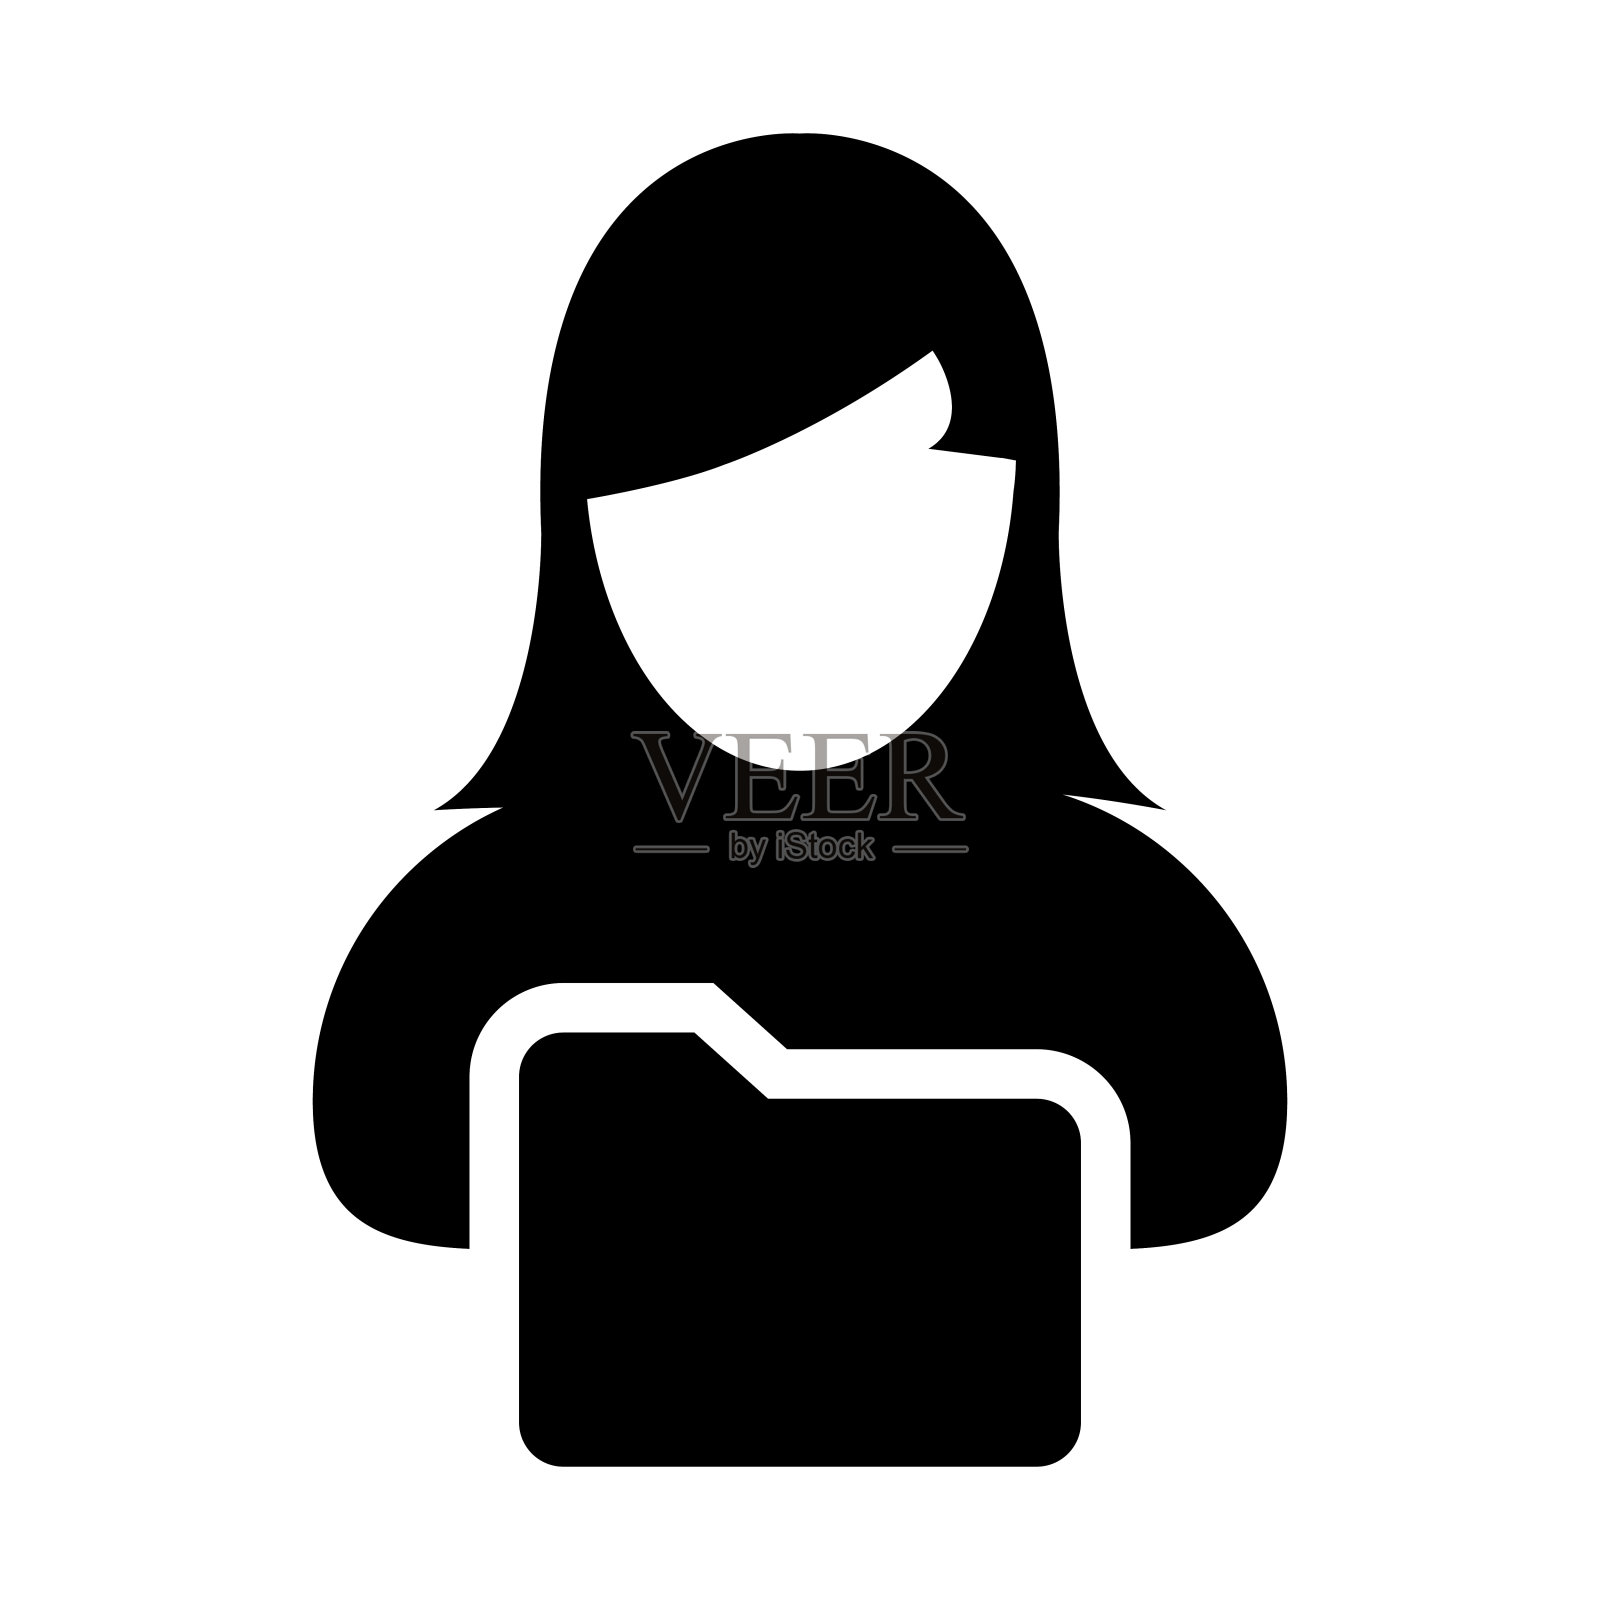 文件夹图标向量与女性个人文件夹用户档案信息头像的象形符号设计元素图片